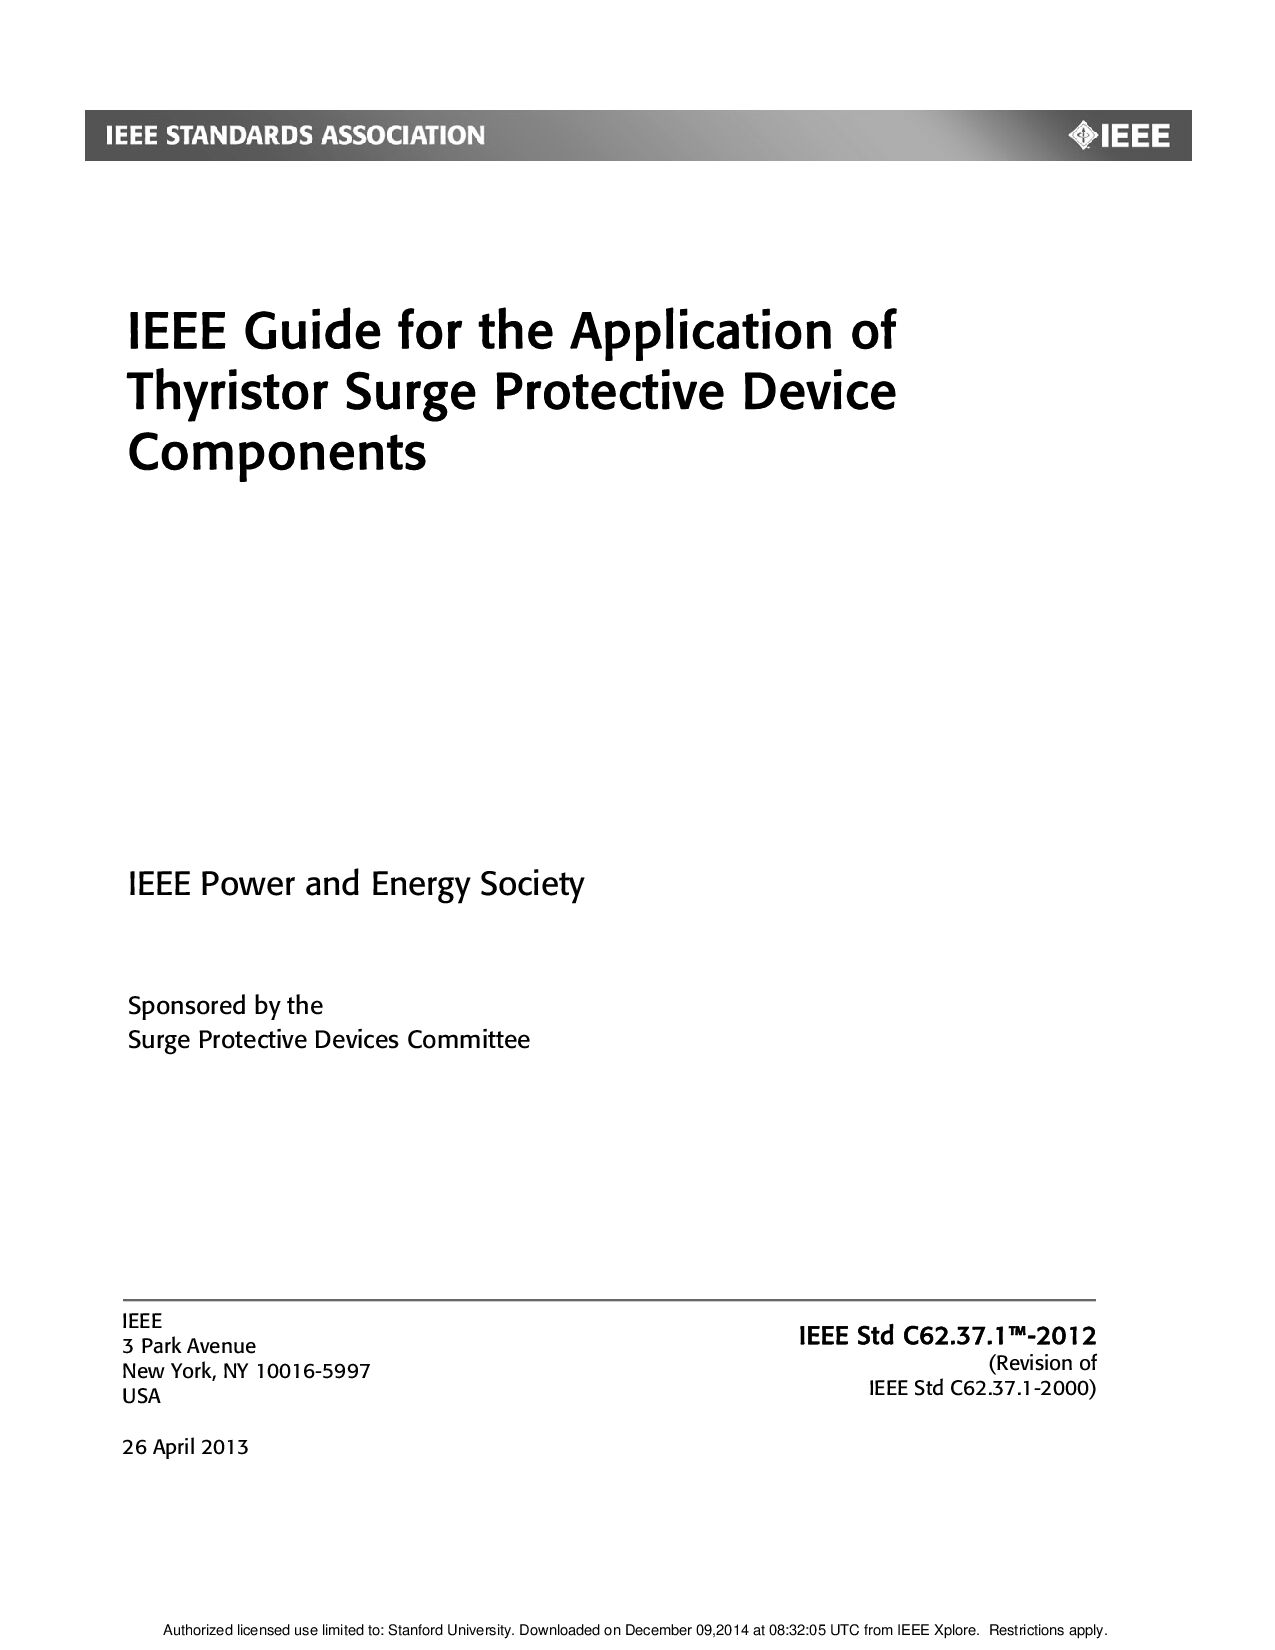 IEEE Std C62.37.1-2012